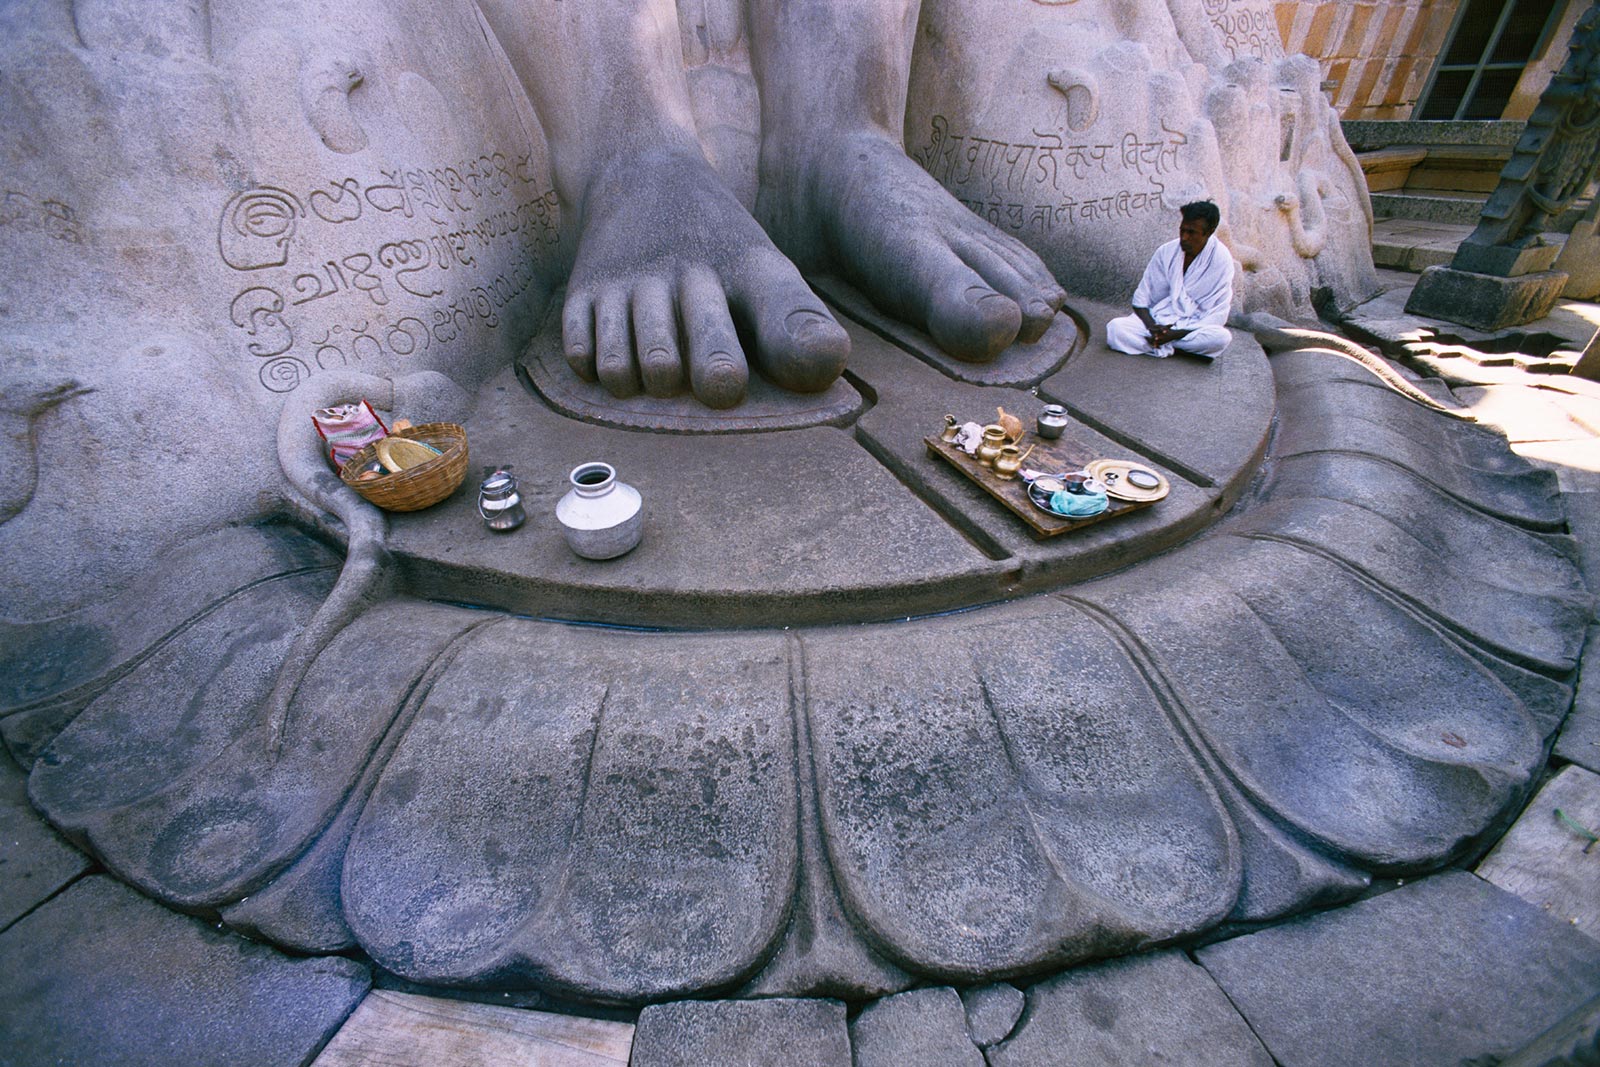 Sri Gomatheswarin patsaan pyhät jalat, Shravanabelagola, Intia